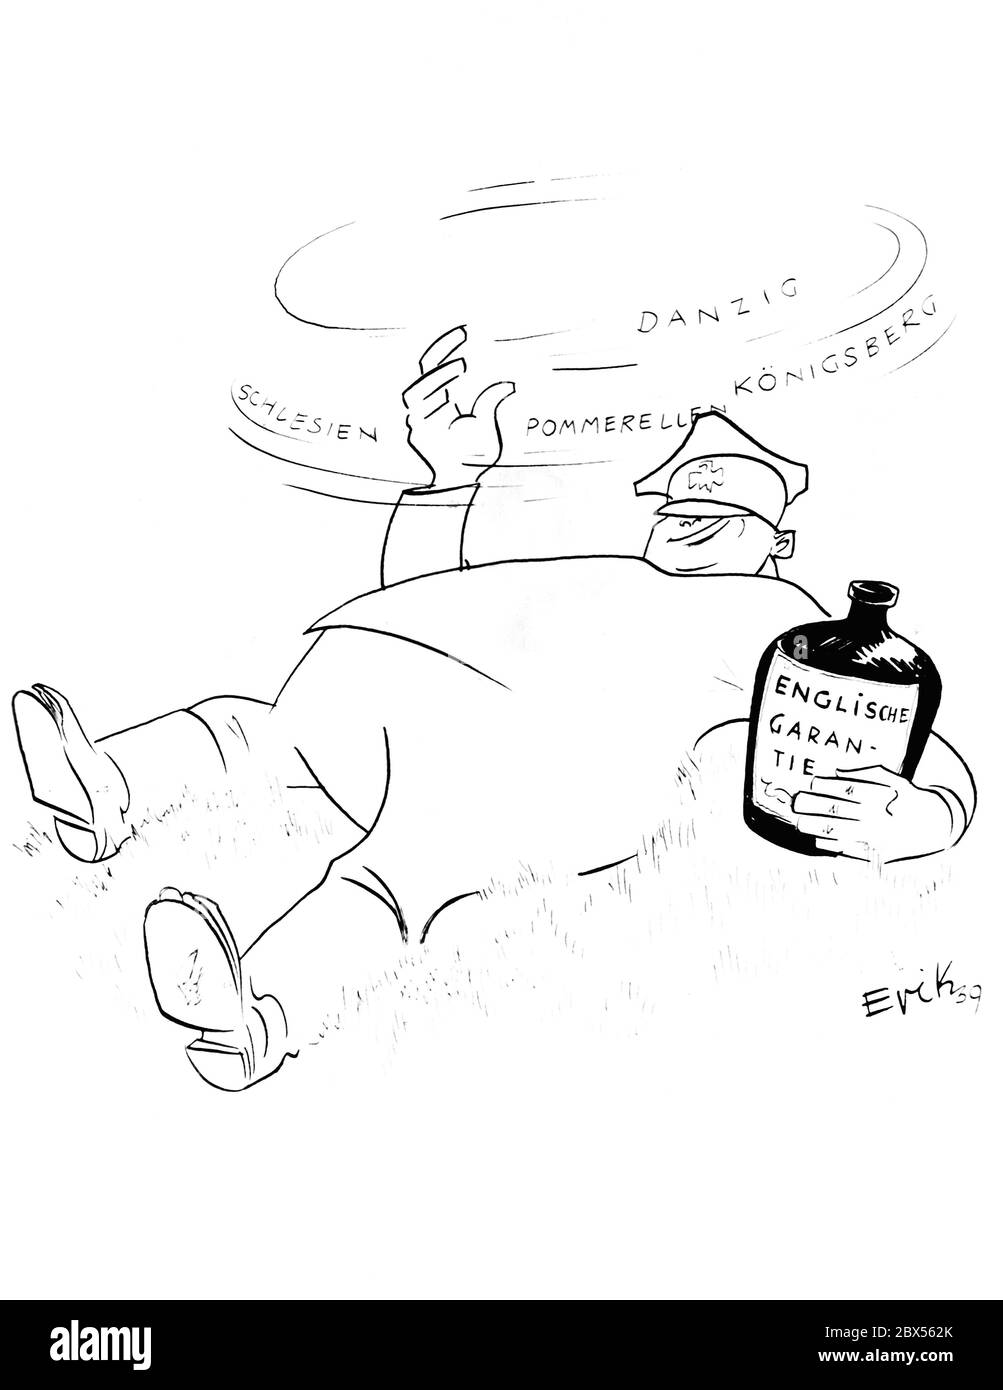 Eine Karikatur von Erik zeigt einen polnischen Soldaten, betrunken, der von Danzig, Pommern, Königsberg und Schlesien träumt, aus einer Flasche mit der Aufschrift "Englische Garantie". Stockfoto